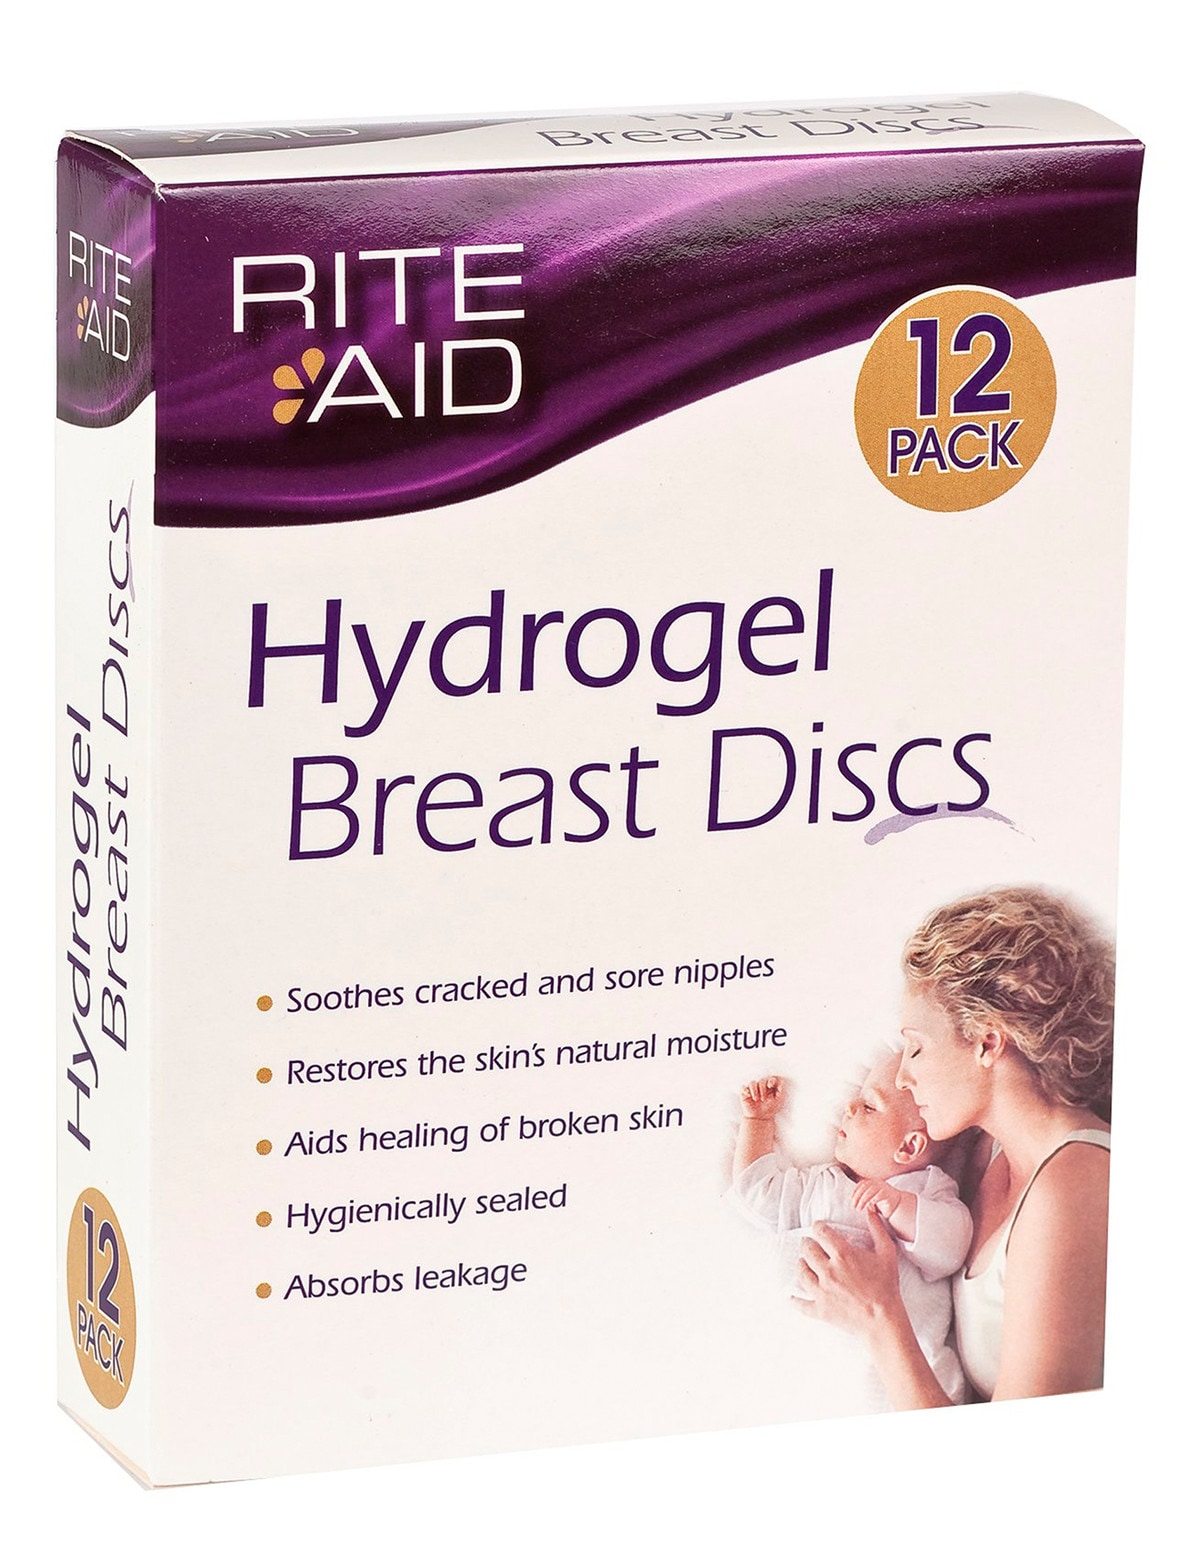 Rite Aid Hydrogel Breast Discs - Feeding